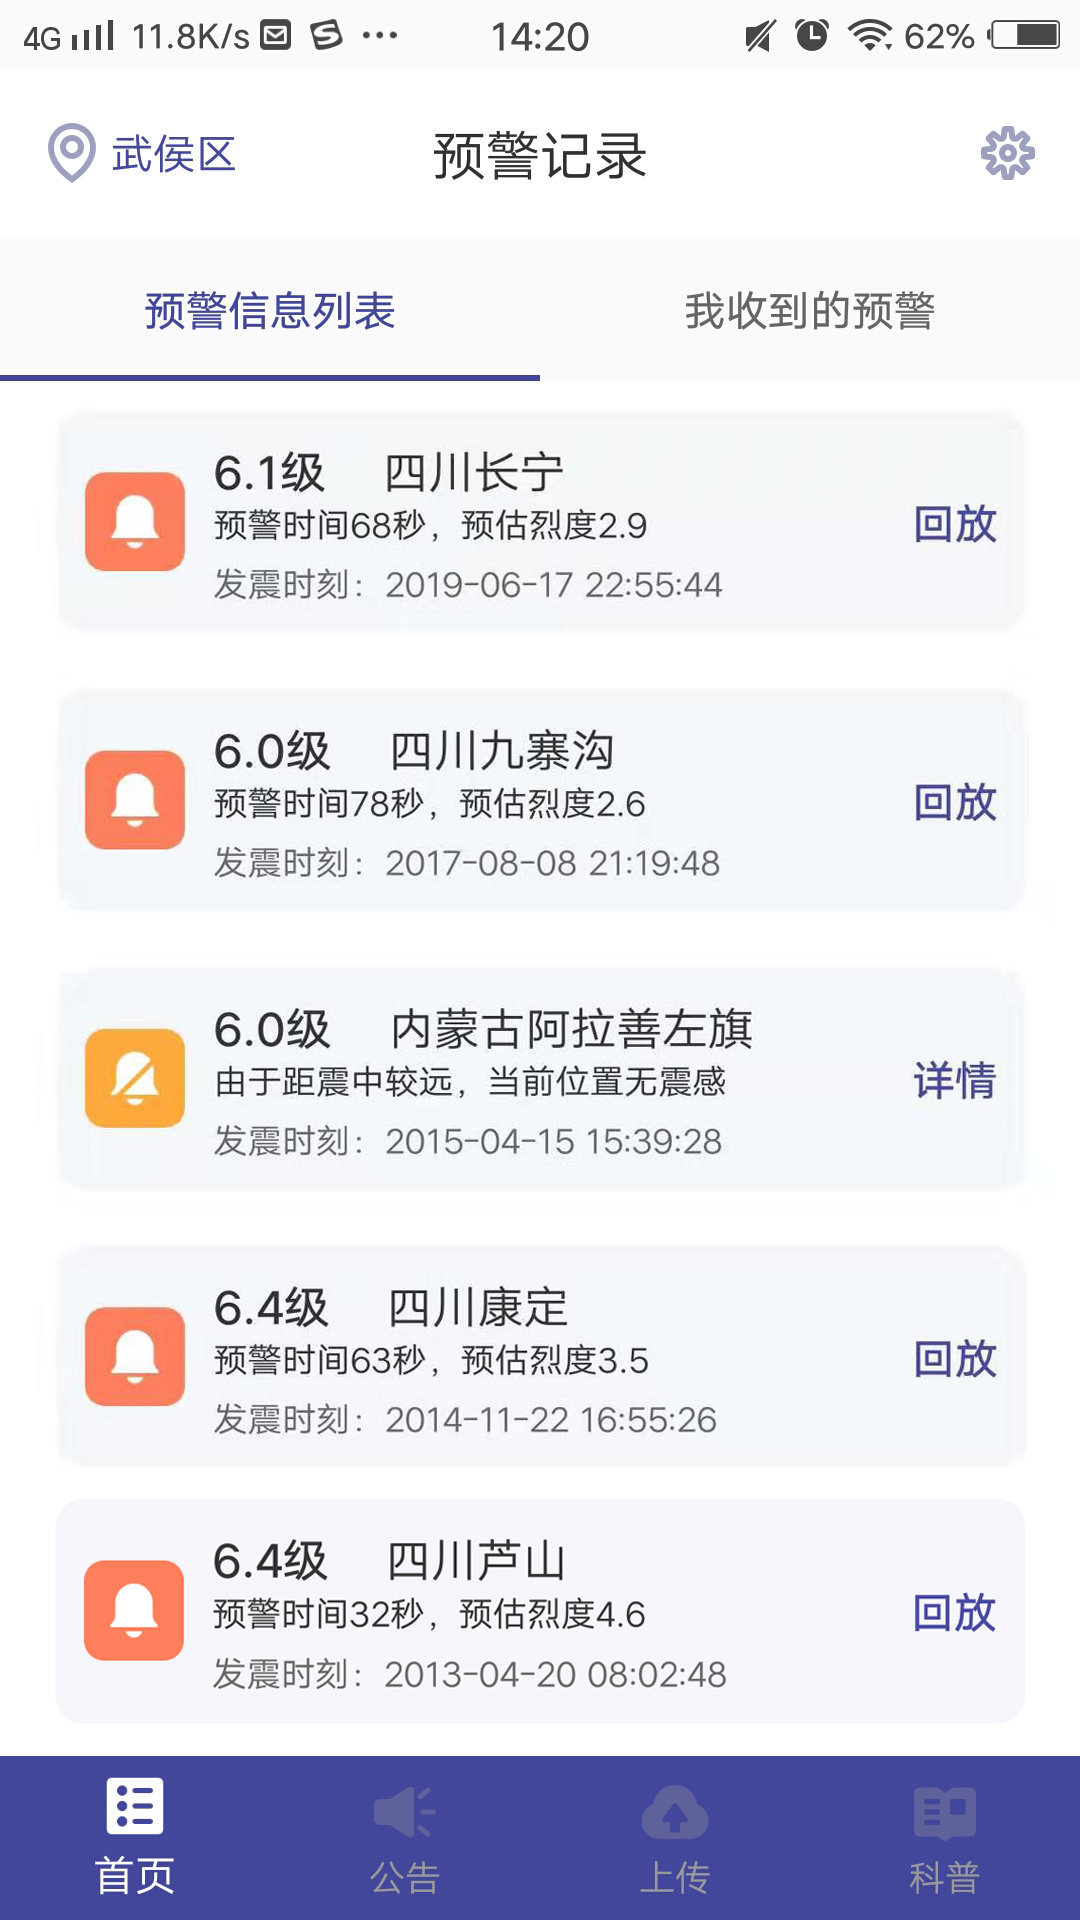 中国地震预警